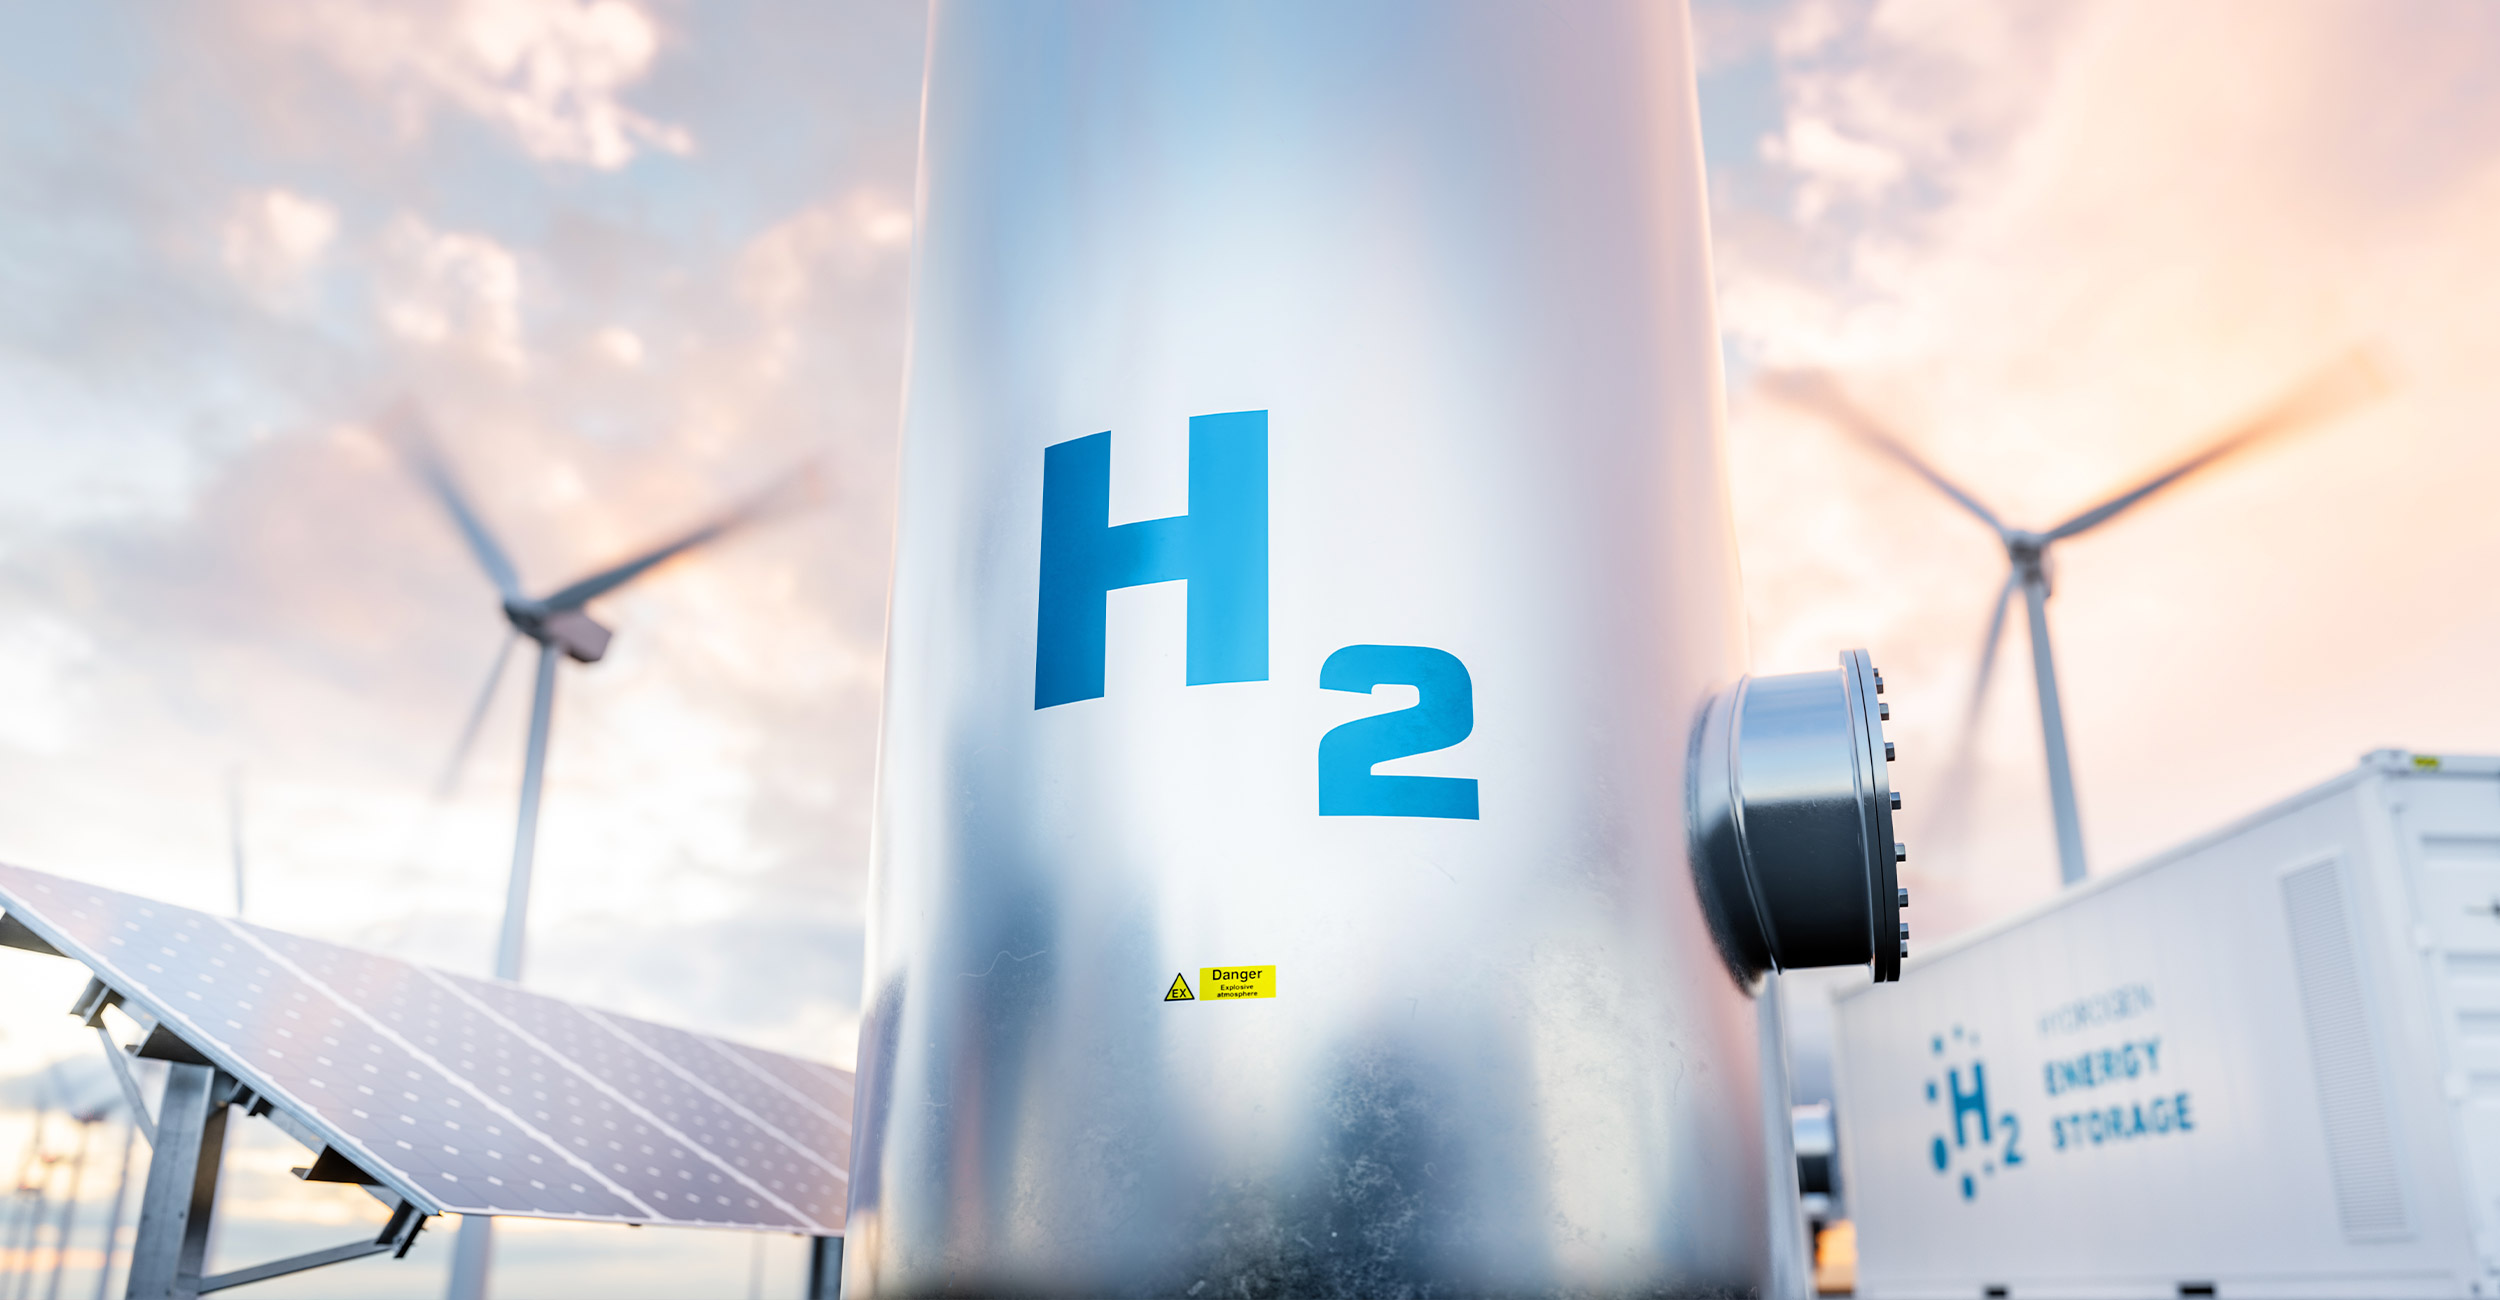 Bewertung der Realisierbarkeit von Wasserstoffimporten gemäß den Zielvorgaben der Nationalen Wasserstoffstrategie bis zum Jahr 2030